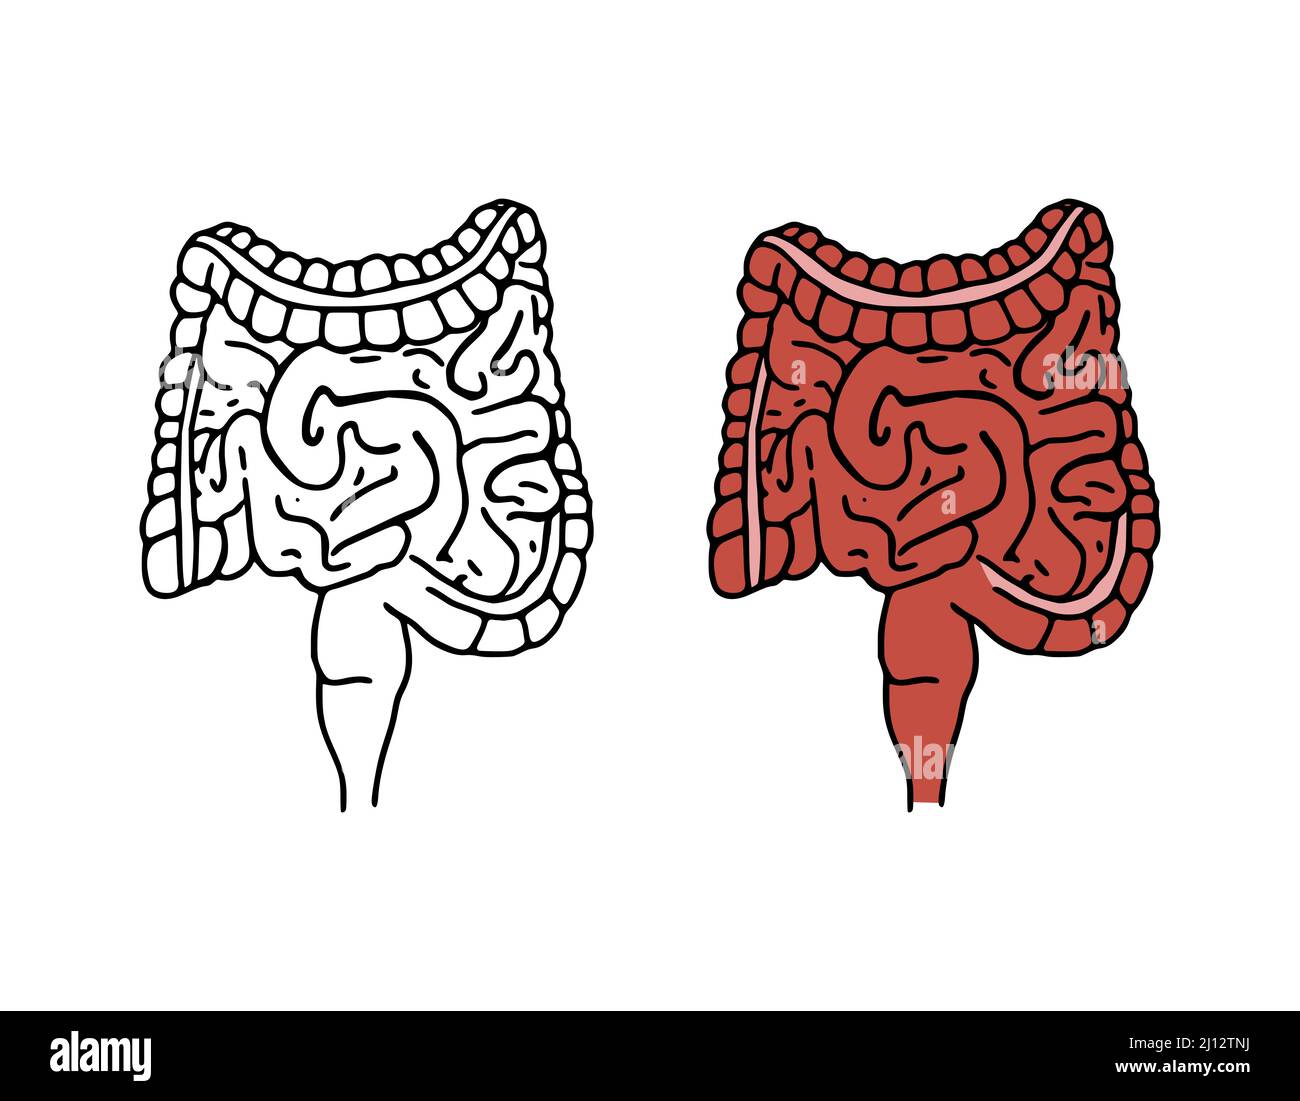 Illustrazione vettoriale di scarabocchio dell'intestino. Icone cartoni animati del sistema digestivo isolate su sfondo bianco. Organo interno umano in stile disegnato a mano Illustrazione Vettoriale